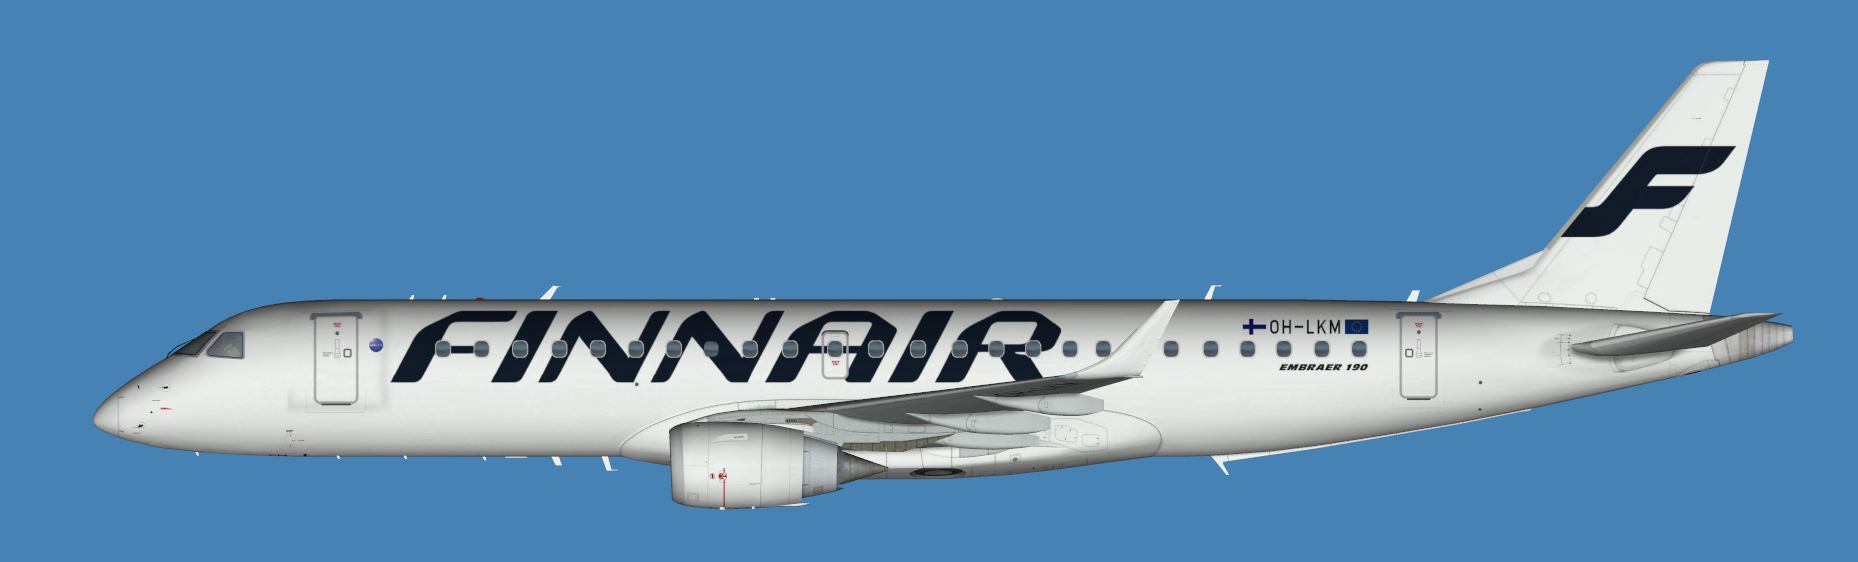 Finnair Embraer Emb 190 Finnair Opb Norra Nordic Regional Airlines Fspainter P3d V4 V5 Jcai